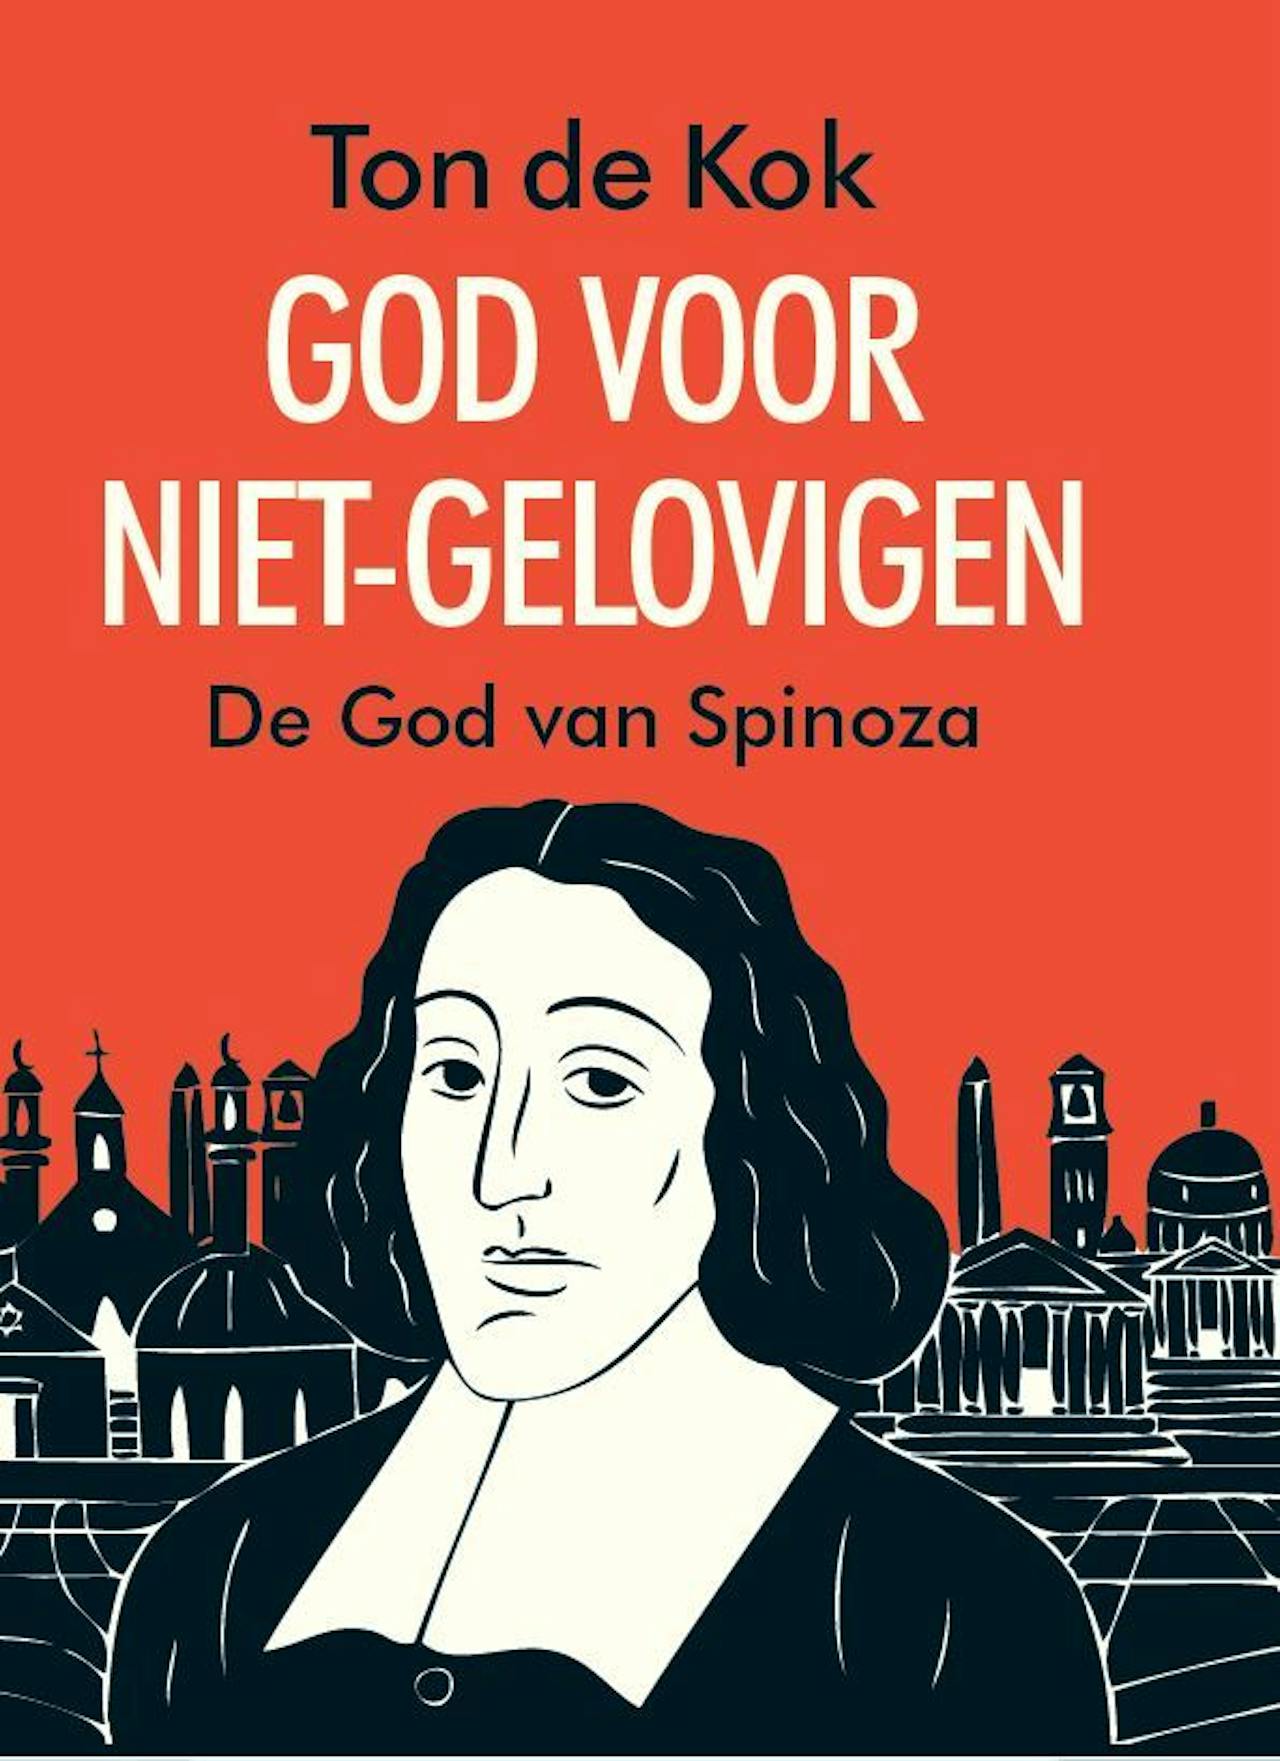 De cover van het boek 'God voor niet-gelovigen. De God van Spinoza' van Ton de Kok.